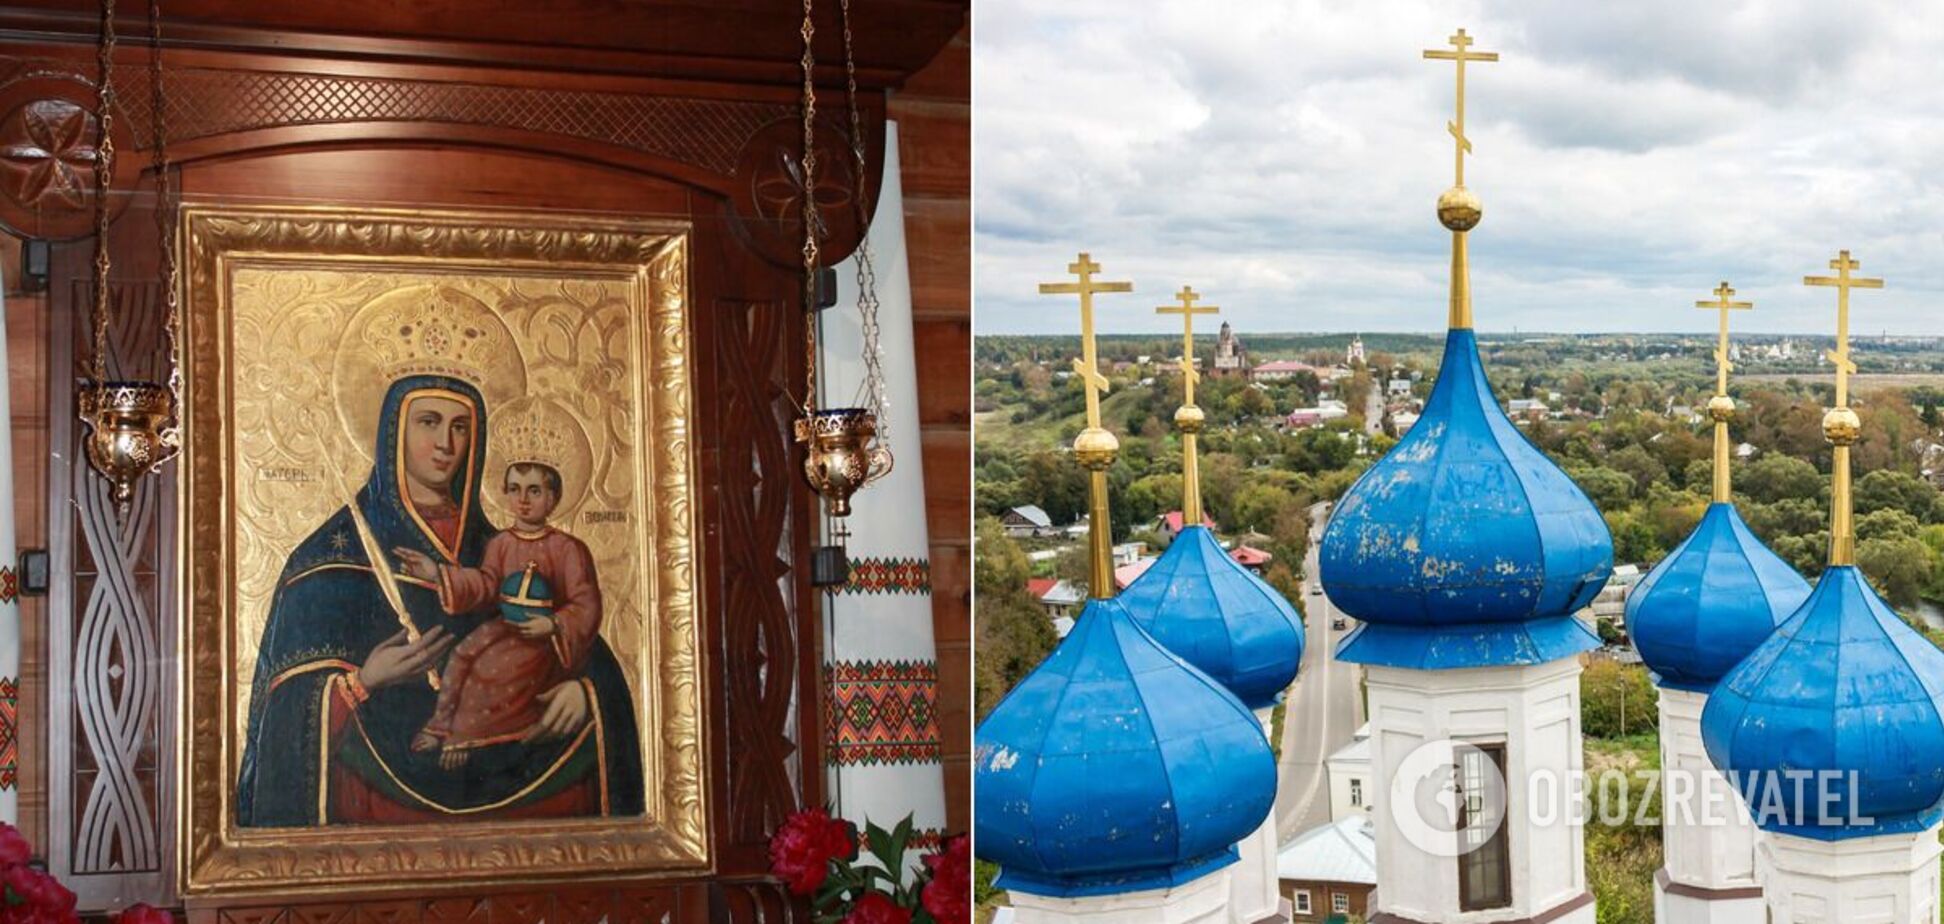 Иконы не могут быть предвестниками плохих событий или новостей для православных христиан, отмечают в ПЦУ